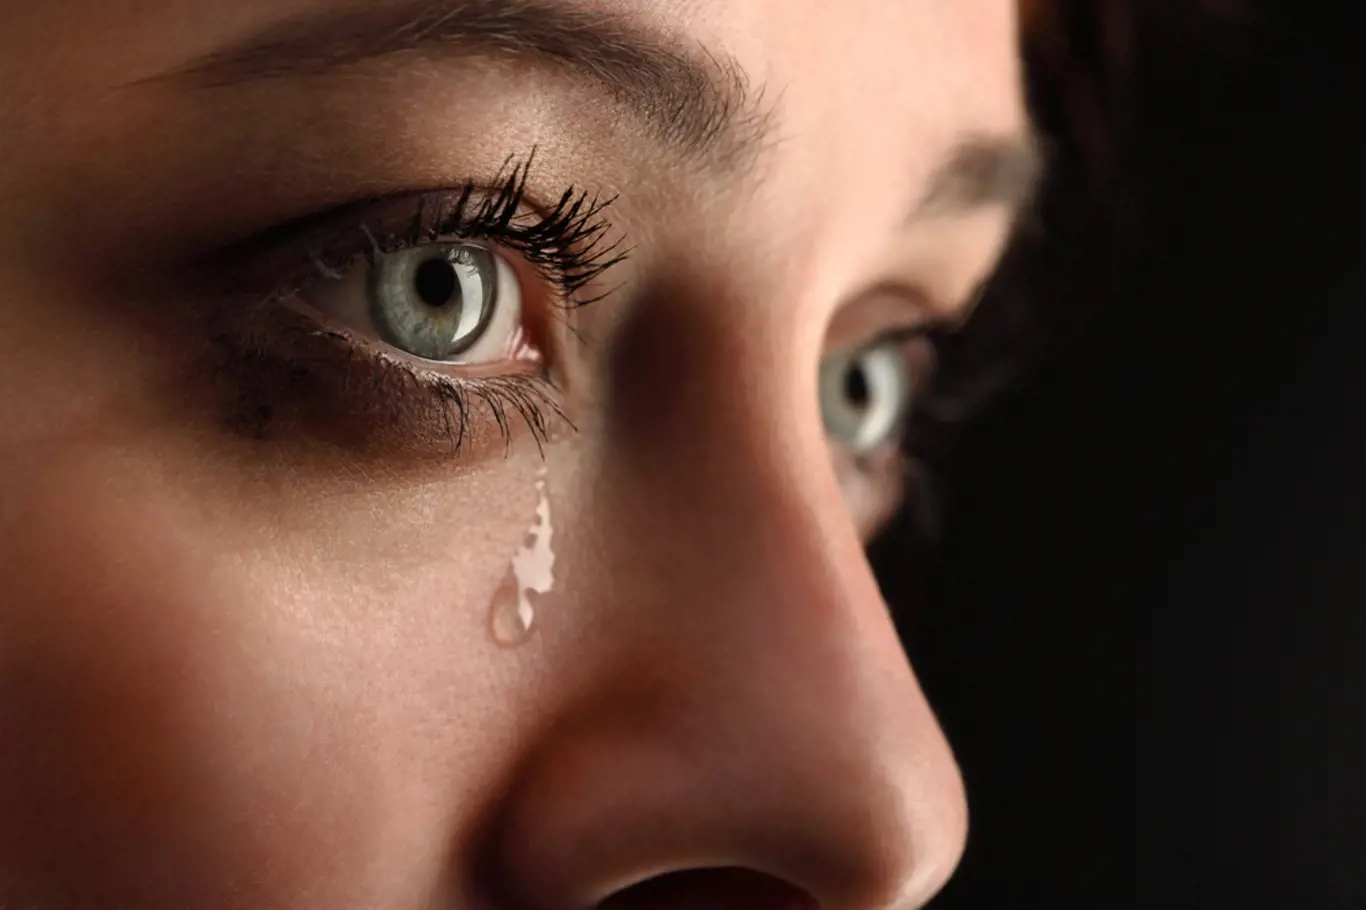 Pláč detoxikuje a přináší úlevu duši